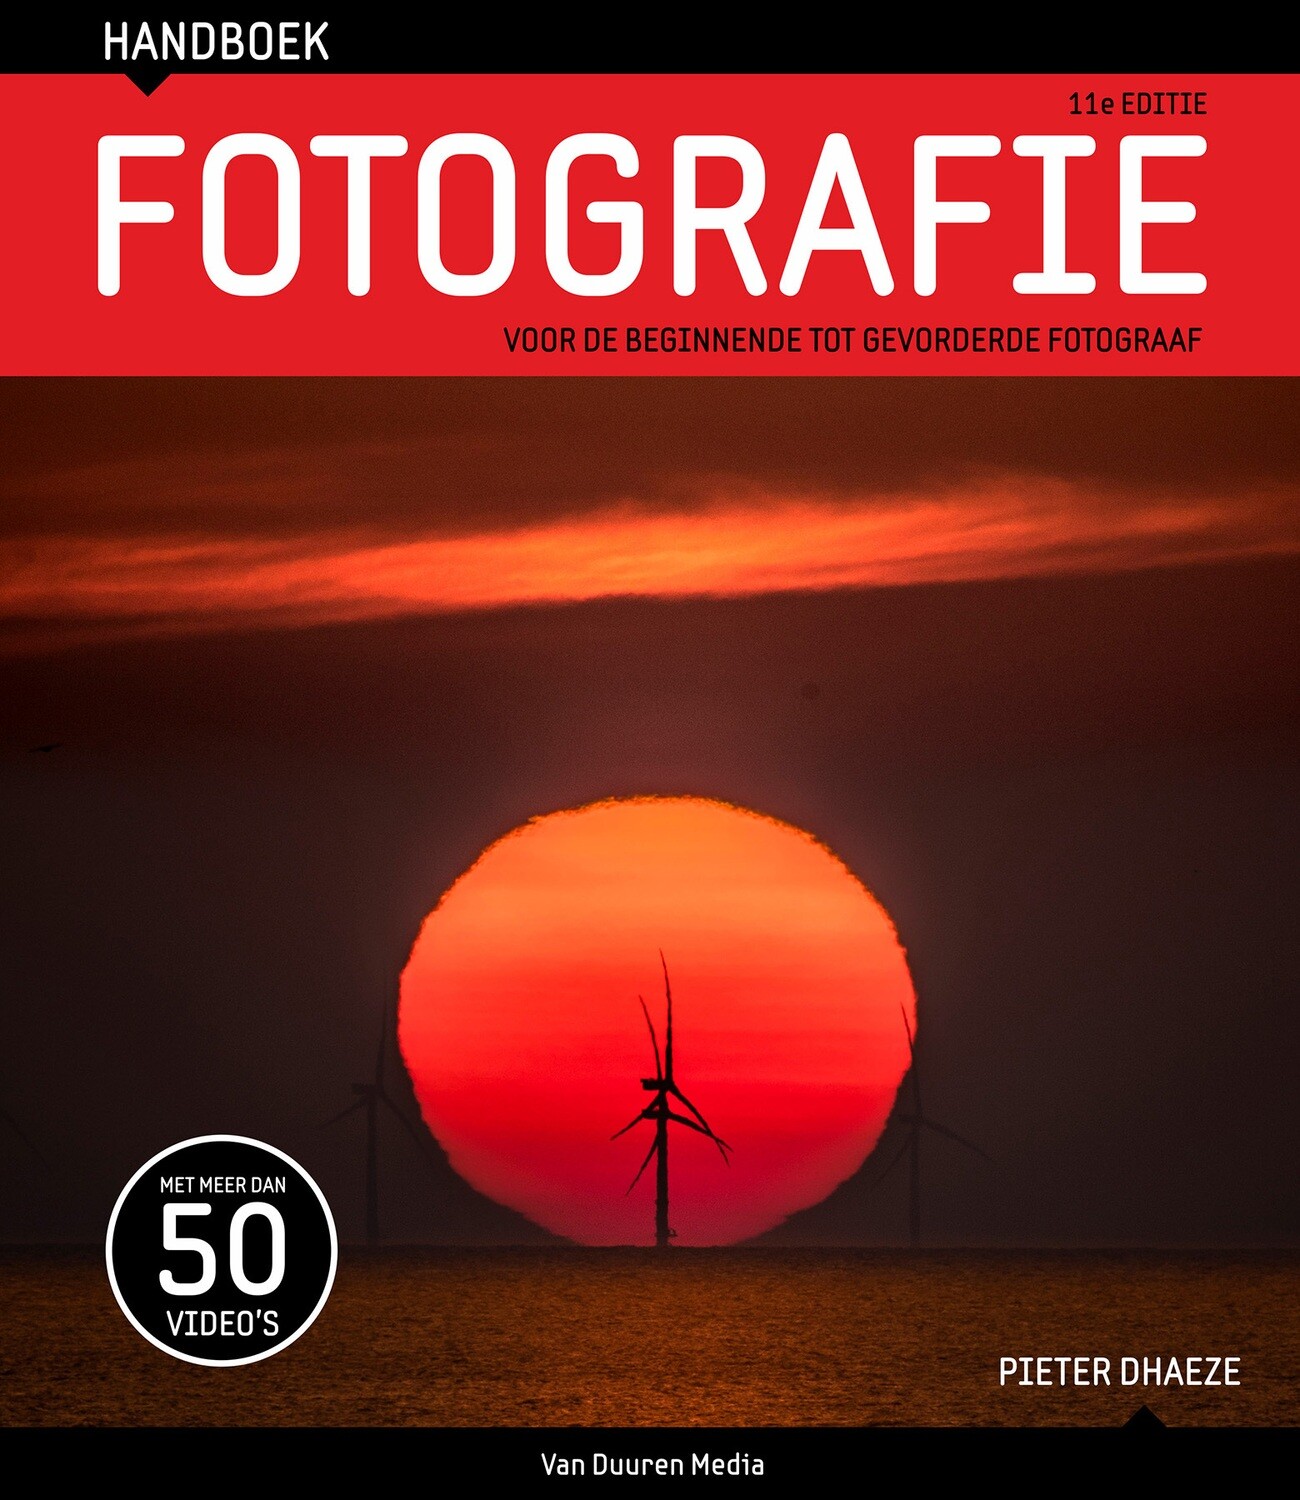 Handboek Fotografie (11e editie) - Pieter Dhaeze